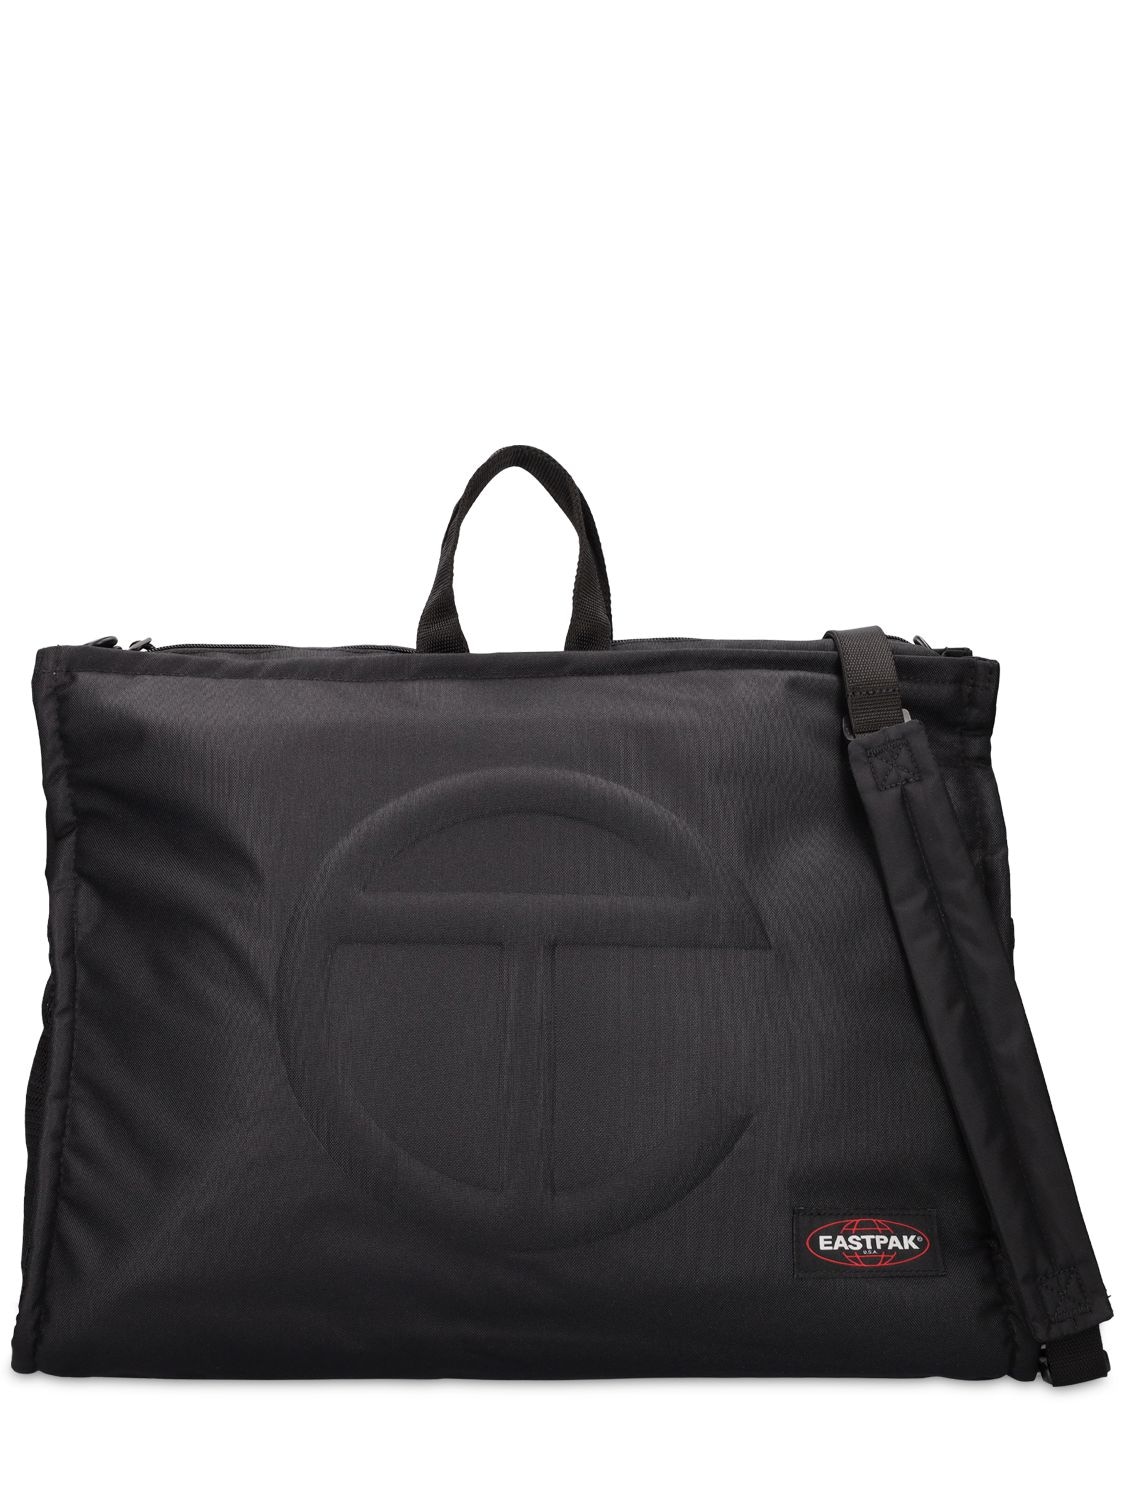 Eastpak X Telfar Large Telfar Shopper Nylon Bag In Black